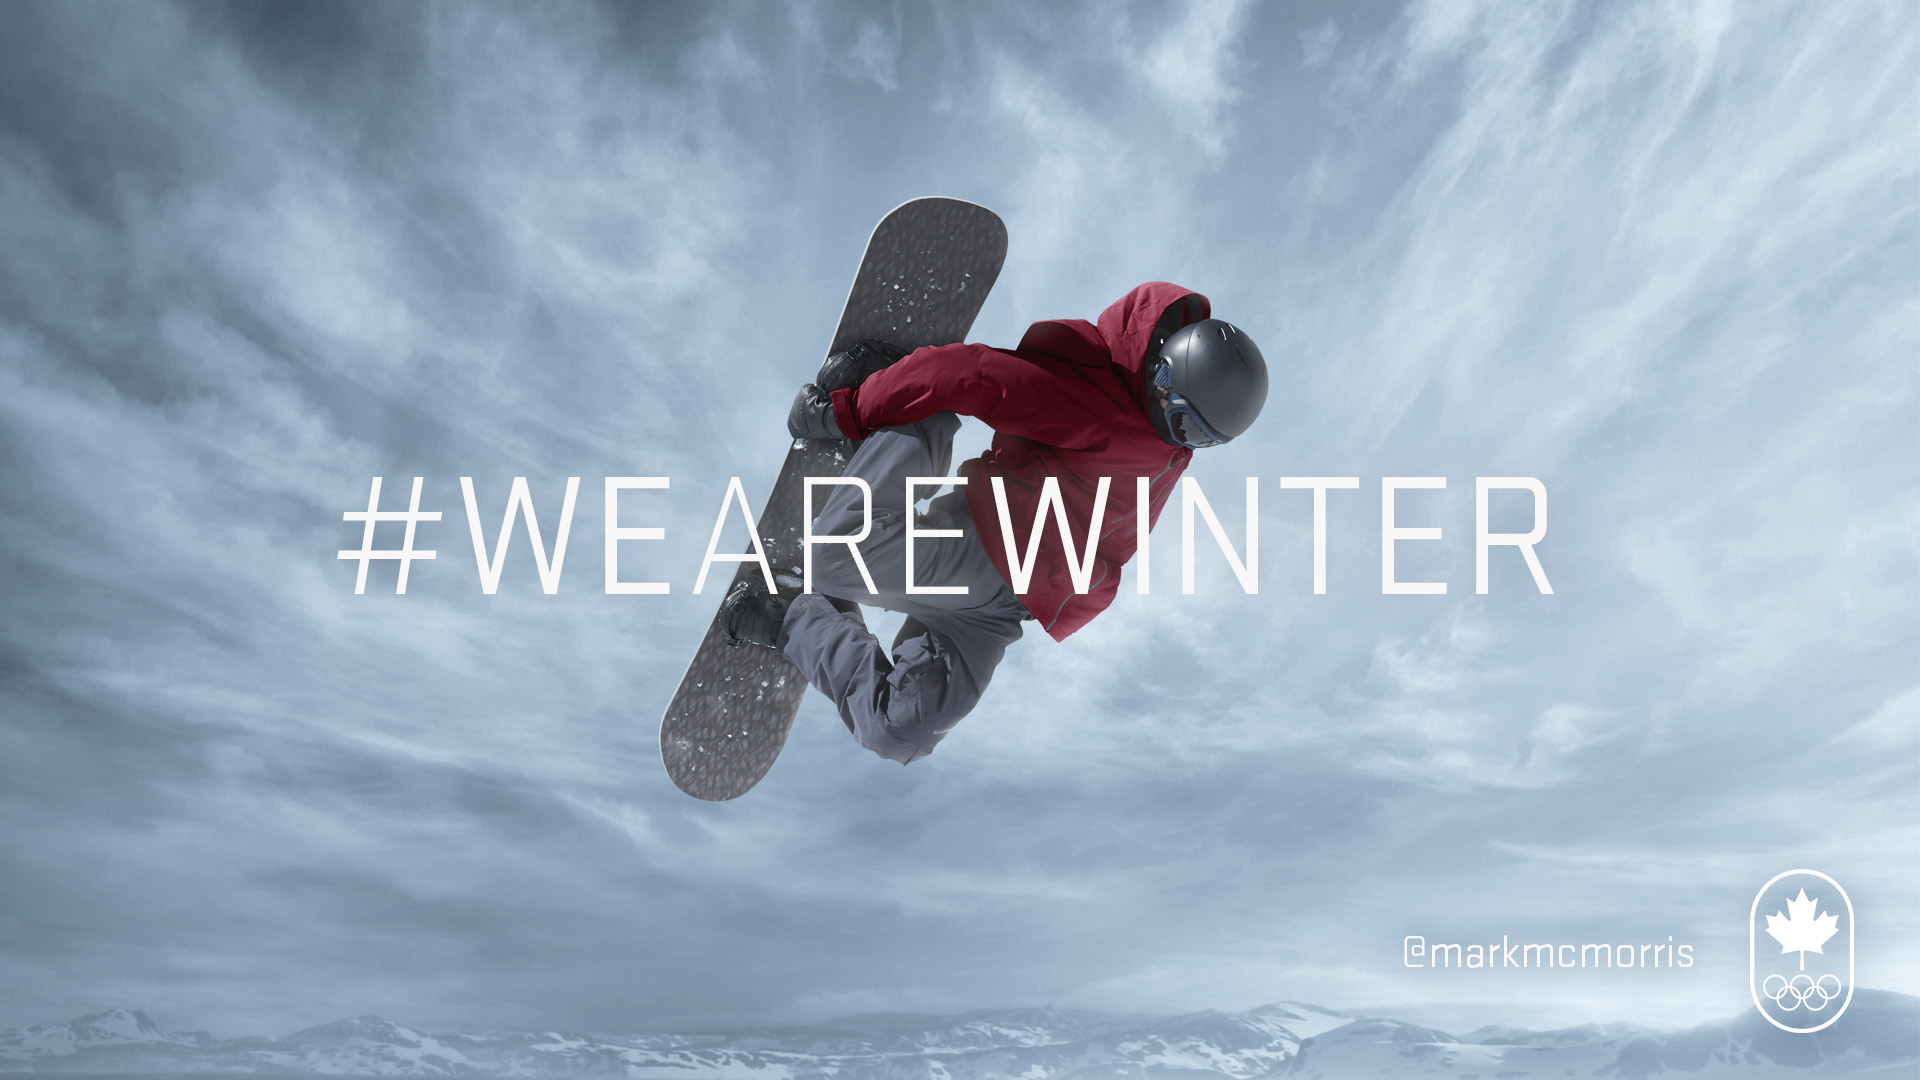 Sochi 2014 Snowboard Live Coverage - Team Canada